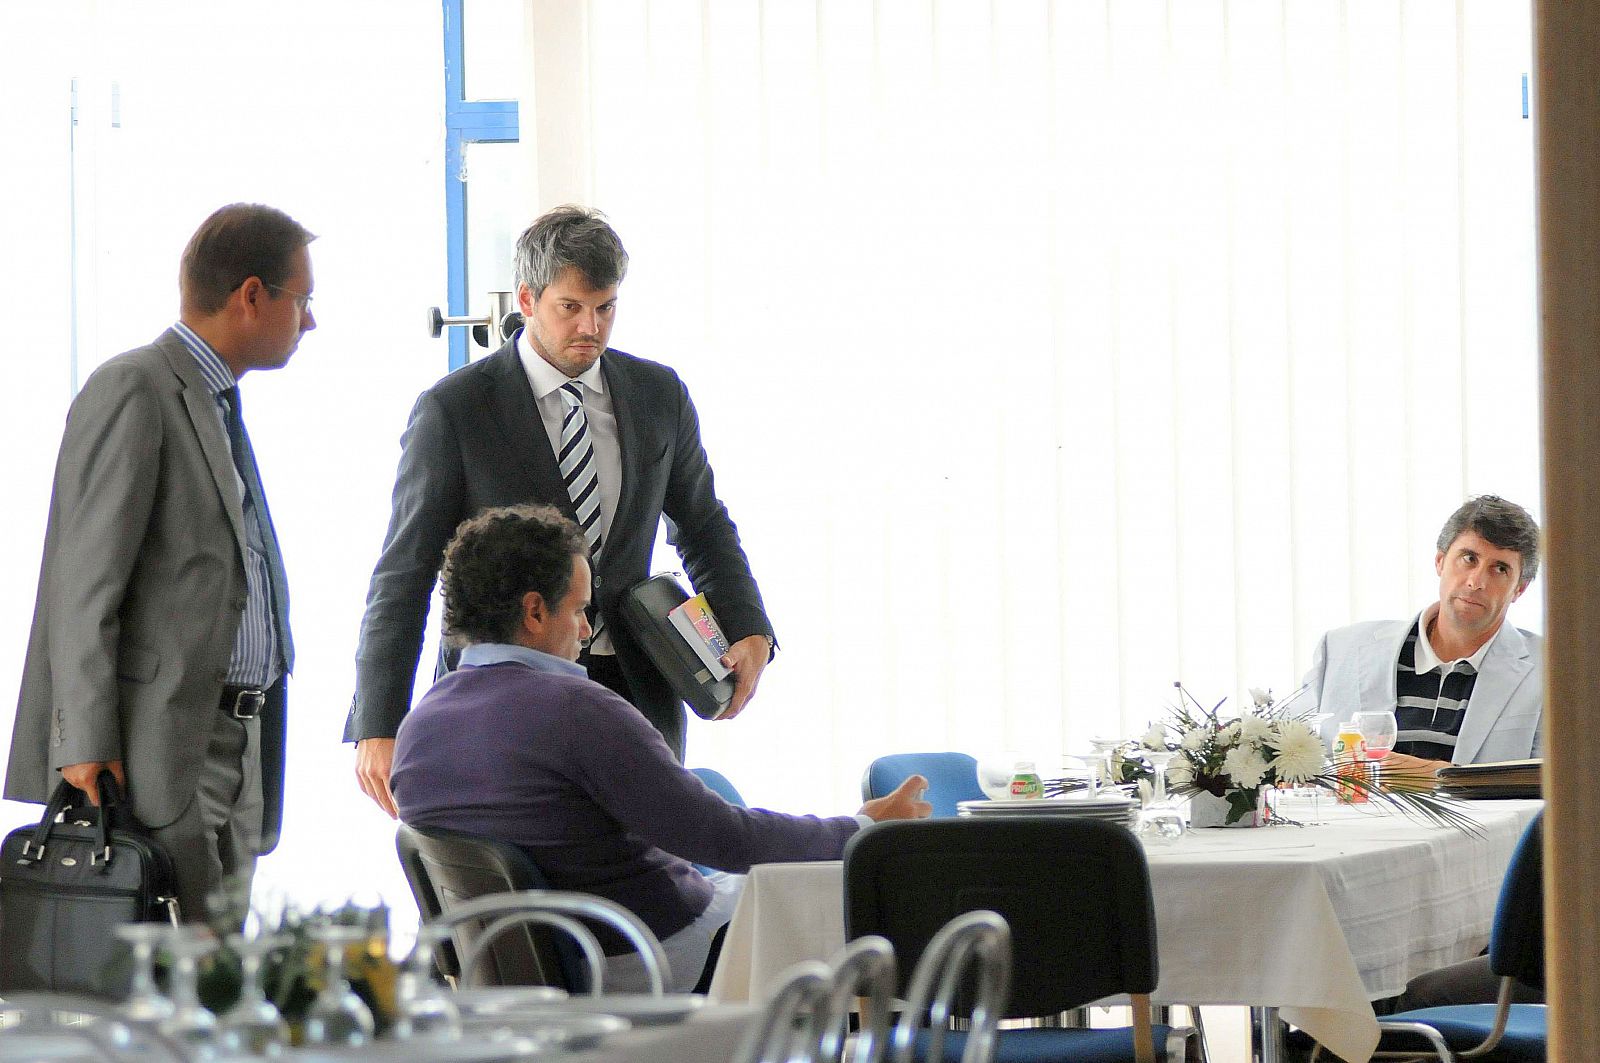 El entrenador del Vaslui, el español López Caro (dcha), su abogado Josep Vandellos (centro) y el ex ministro de justicia de Rumanía, Tudor Chiuariu (izda), se reúnen en Vaslui